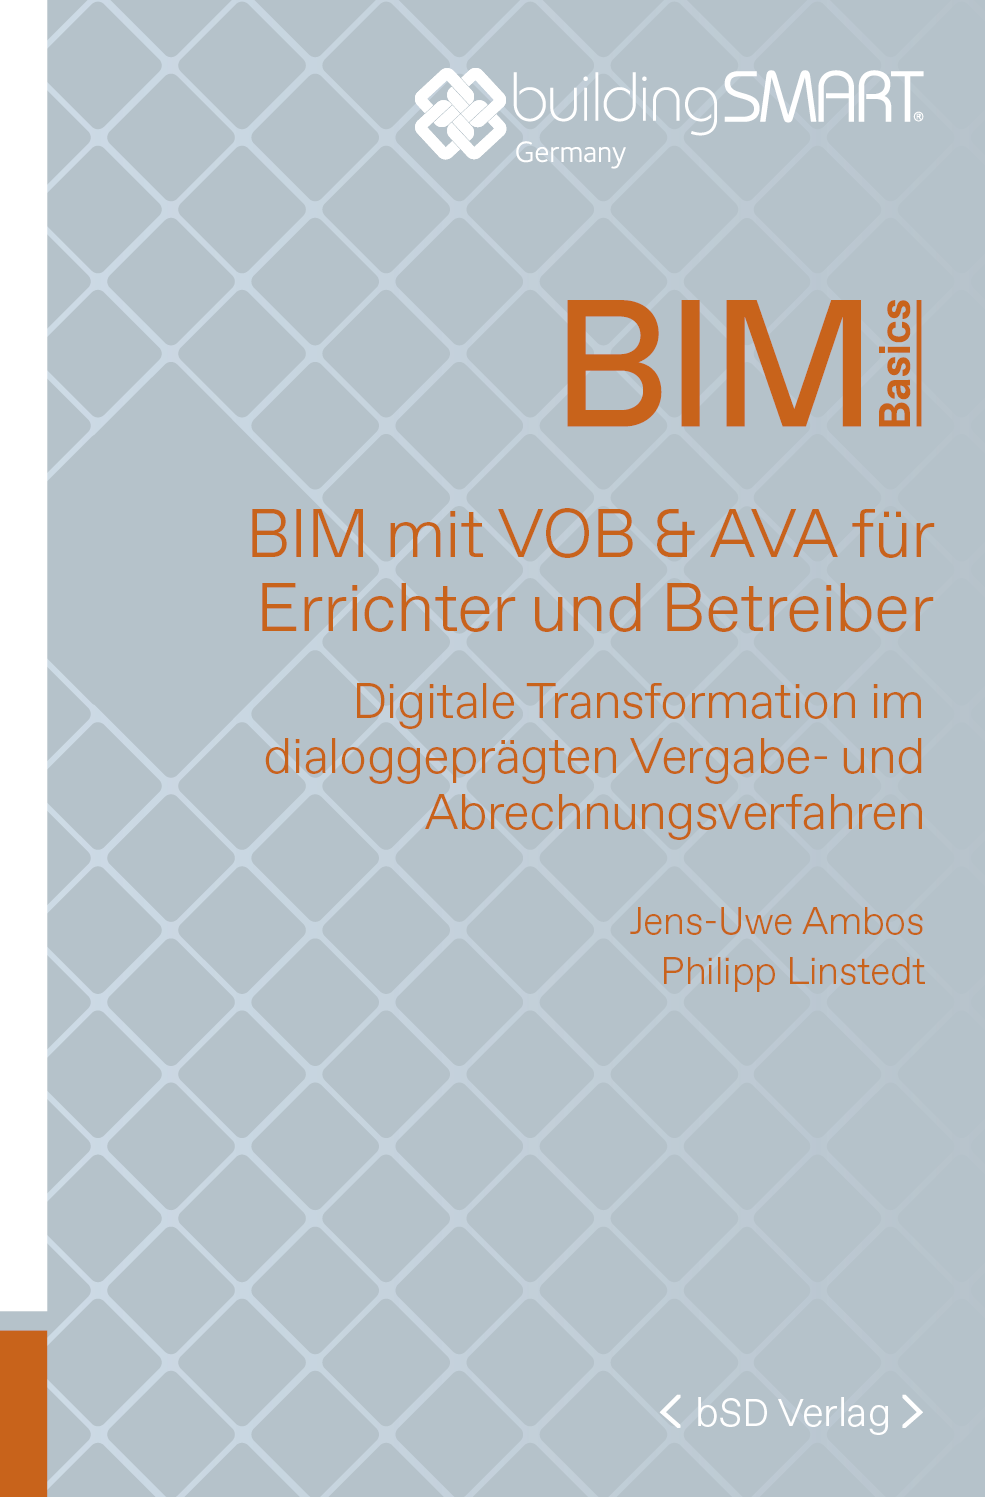 bSD Verlag/BIM-Basics: BIM mit VOB + AVA